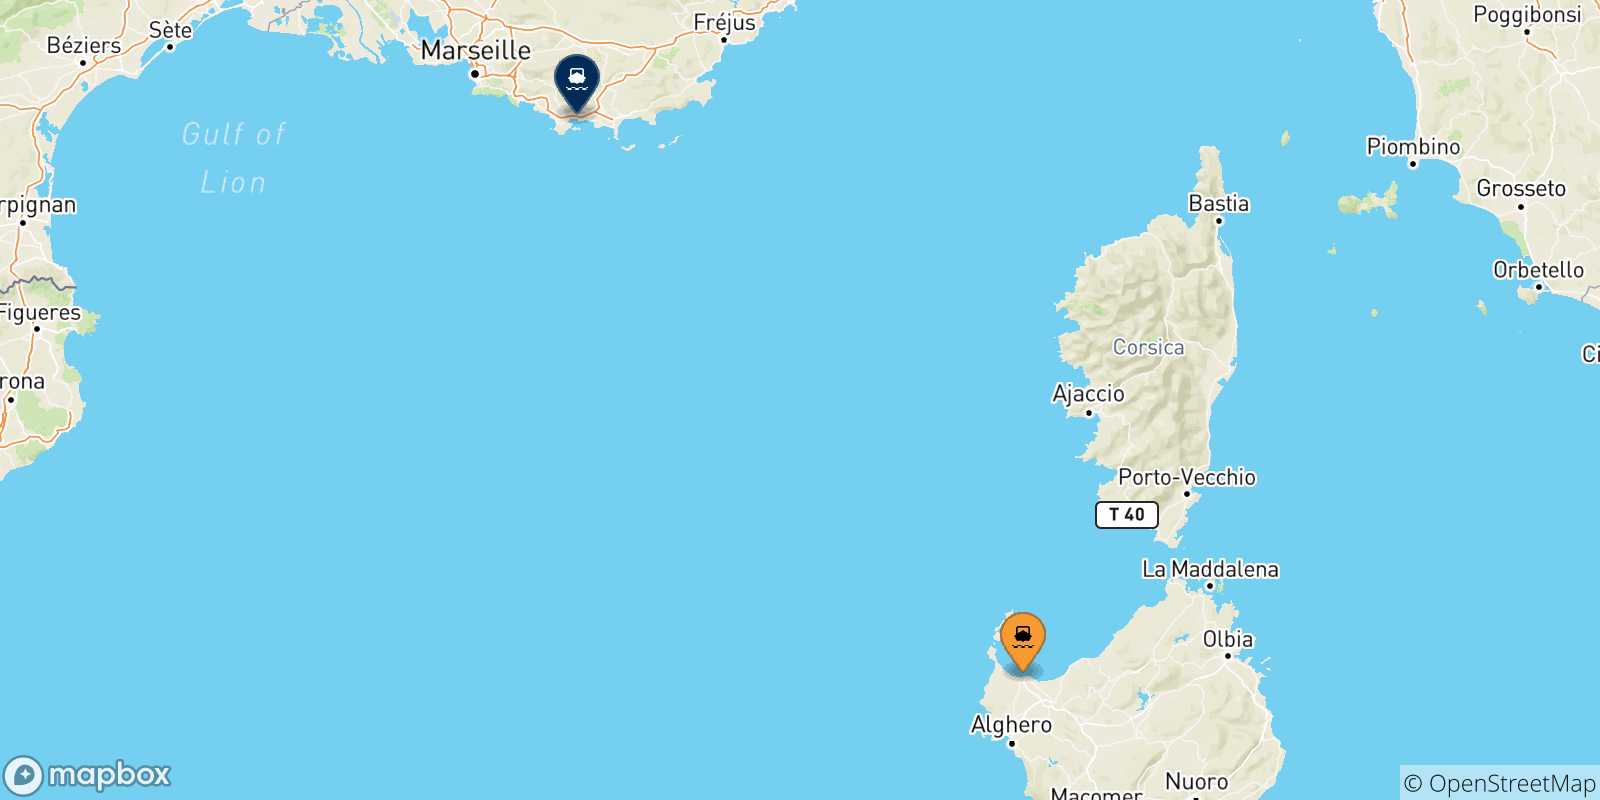 Mappa delle possibili rotte tra la Sardegna e Tolone